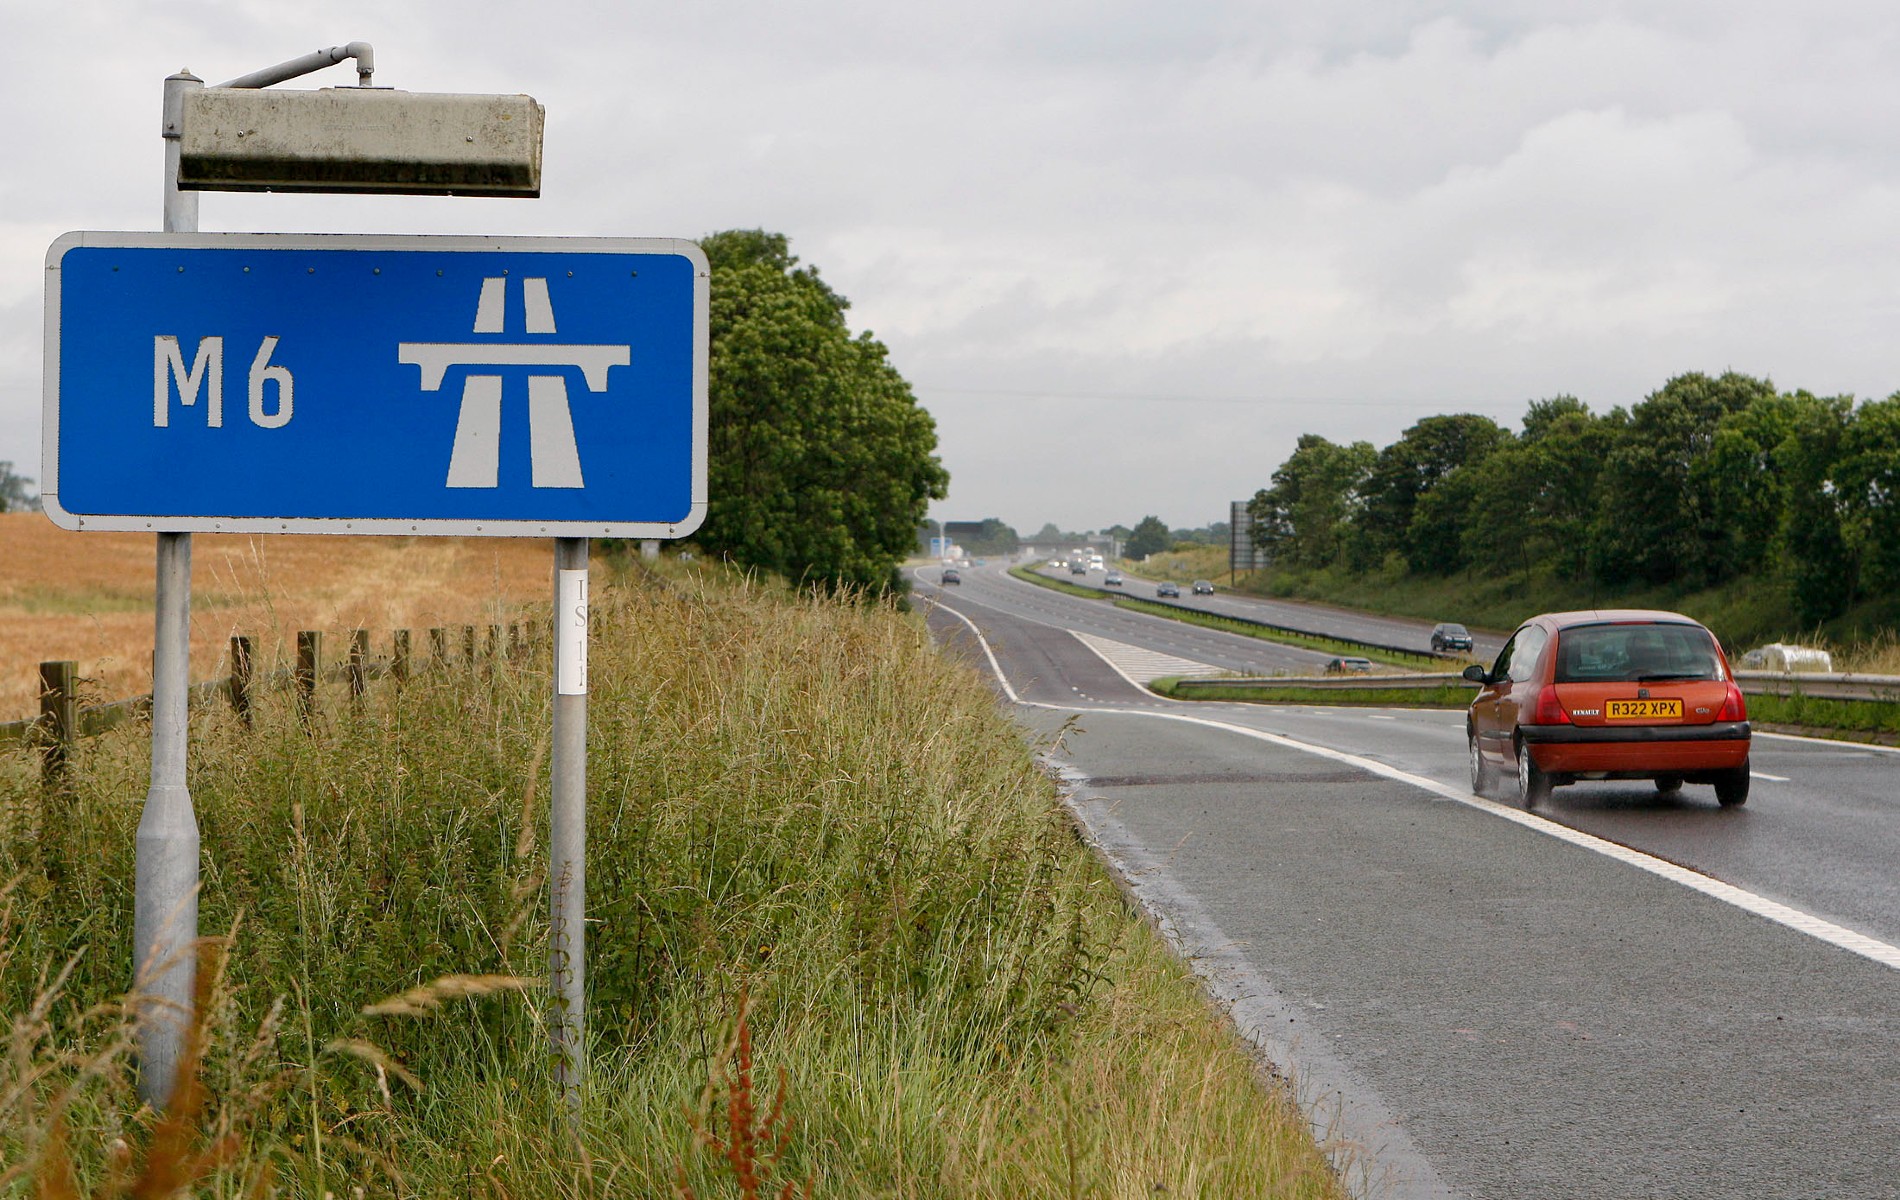 Royaume-Uni : le gouvernement renonce à toute nouvelle autoroute intelligente jugée trop dangereuse